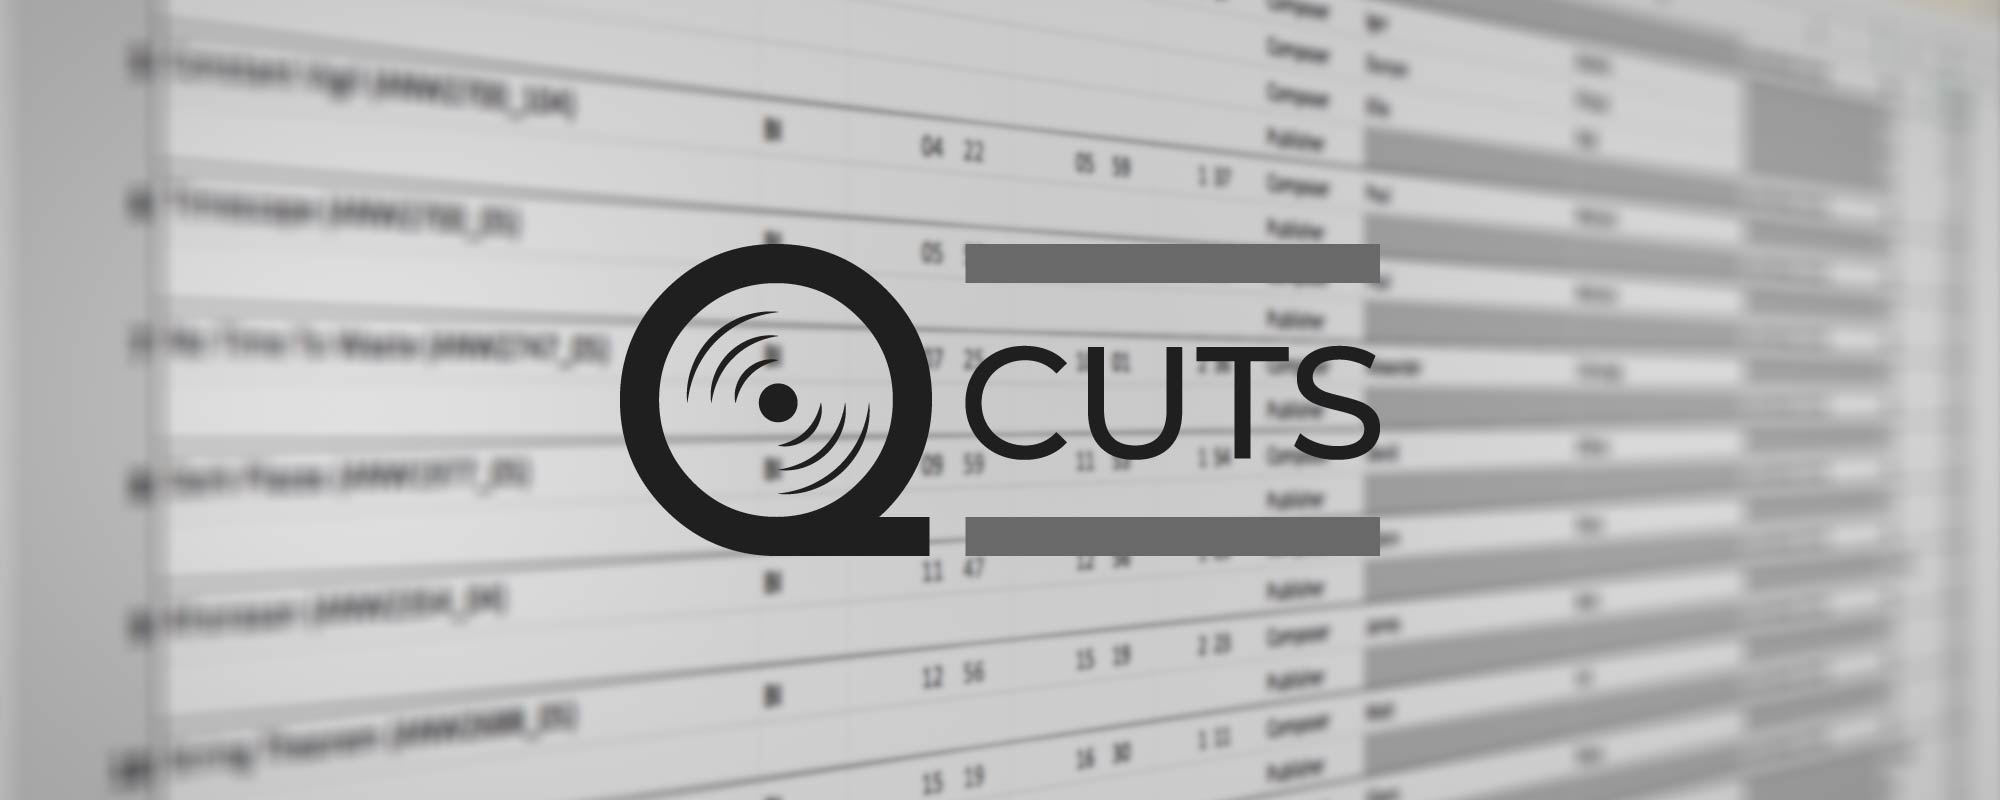 Q-Cuts